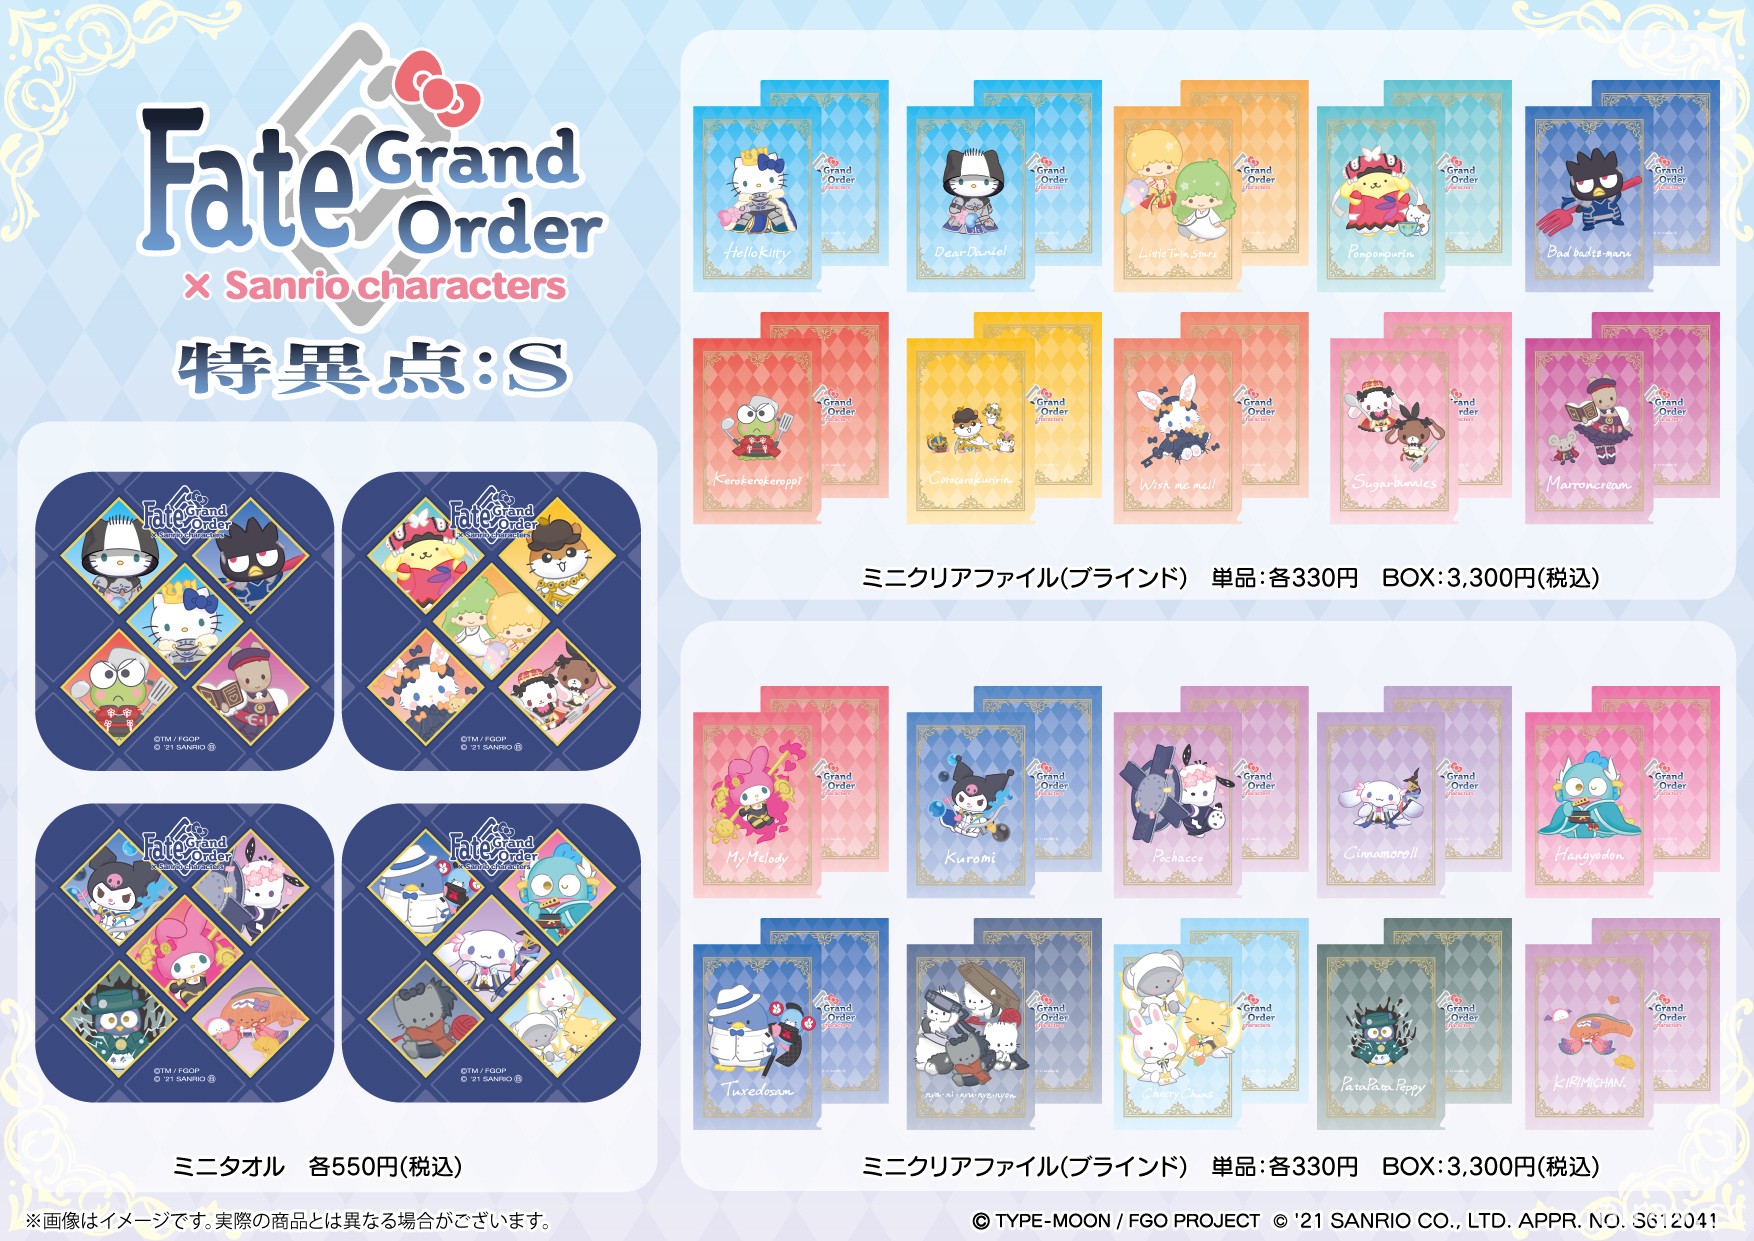 三麗鷗角色 ×《Fate/Grand Order》合作商品開放預購  Hello Kitty 等角色化身從者